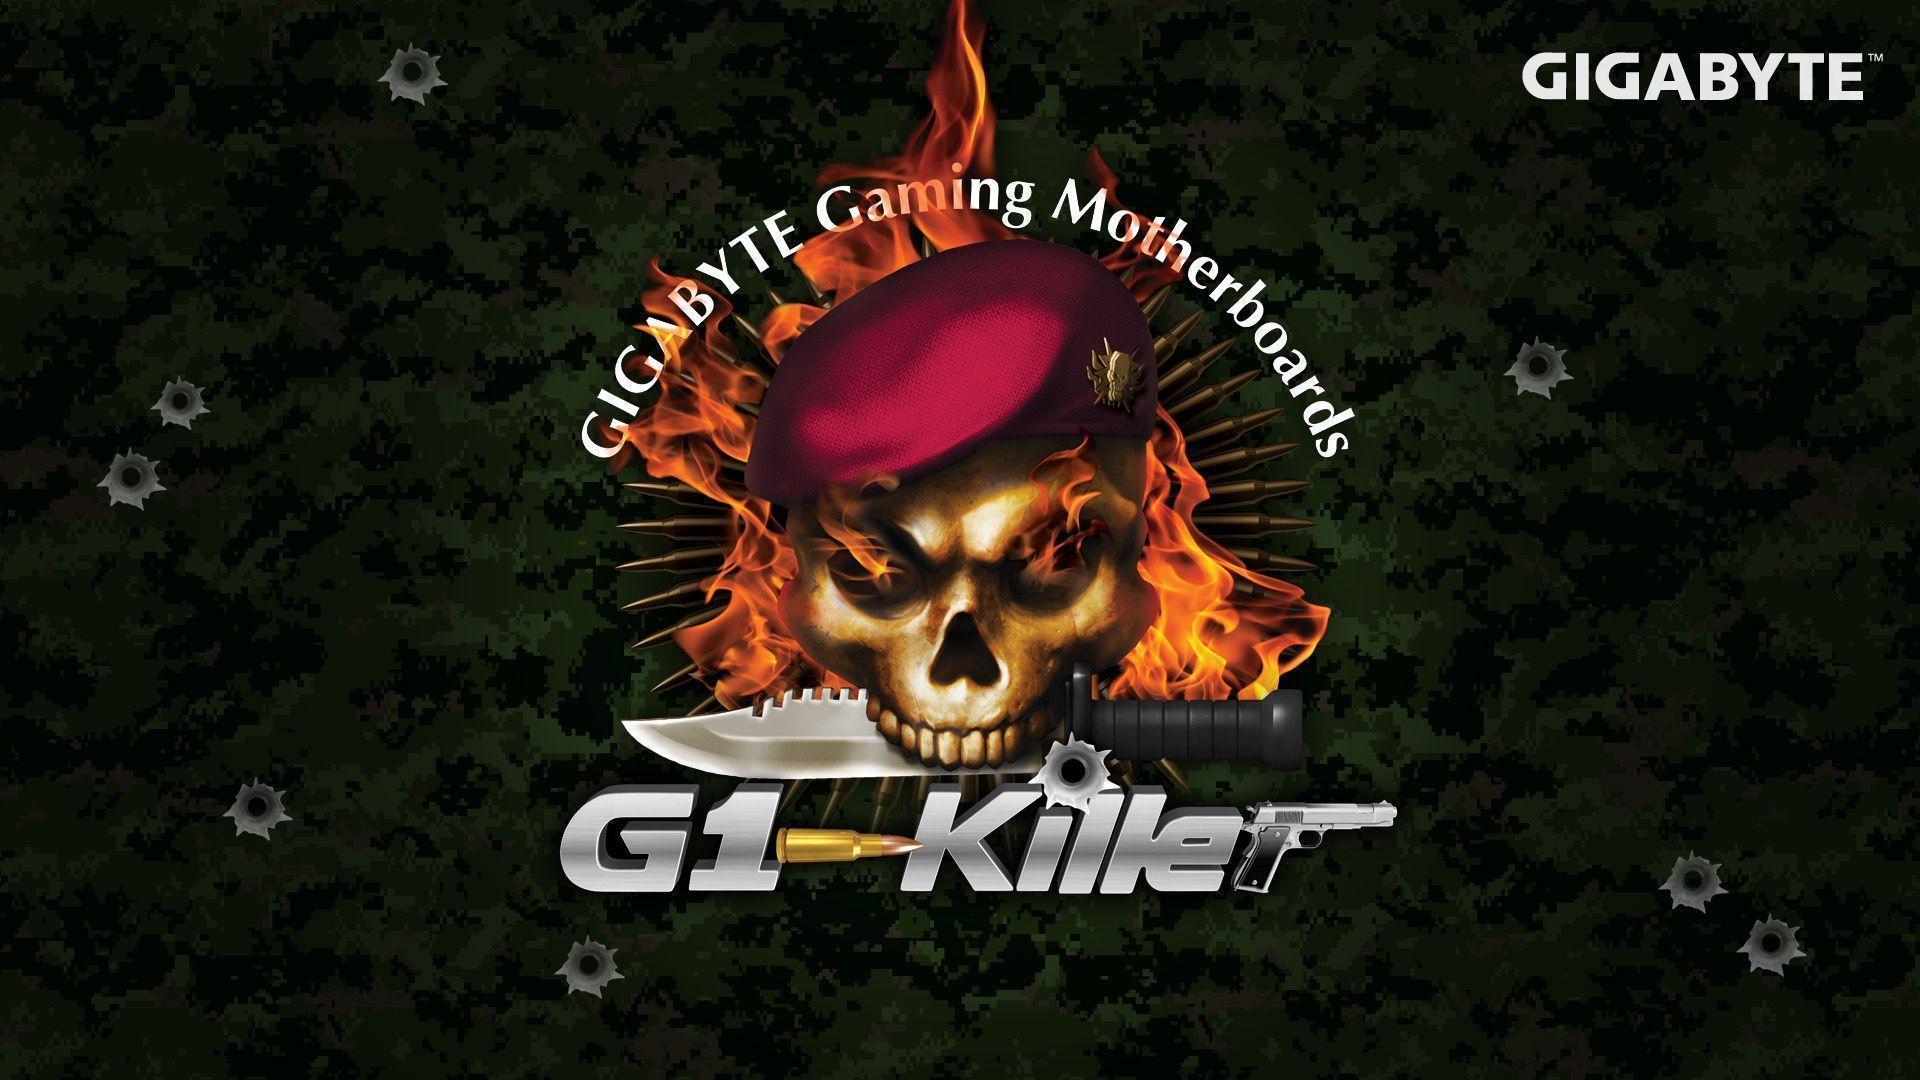 GIGABYTE G1 Killer Series Motherboards